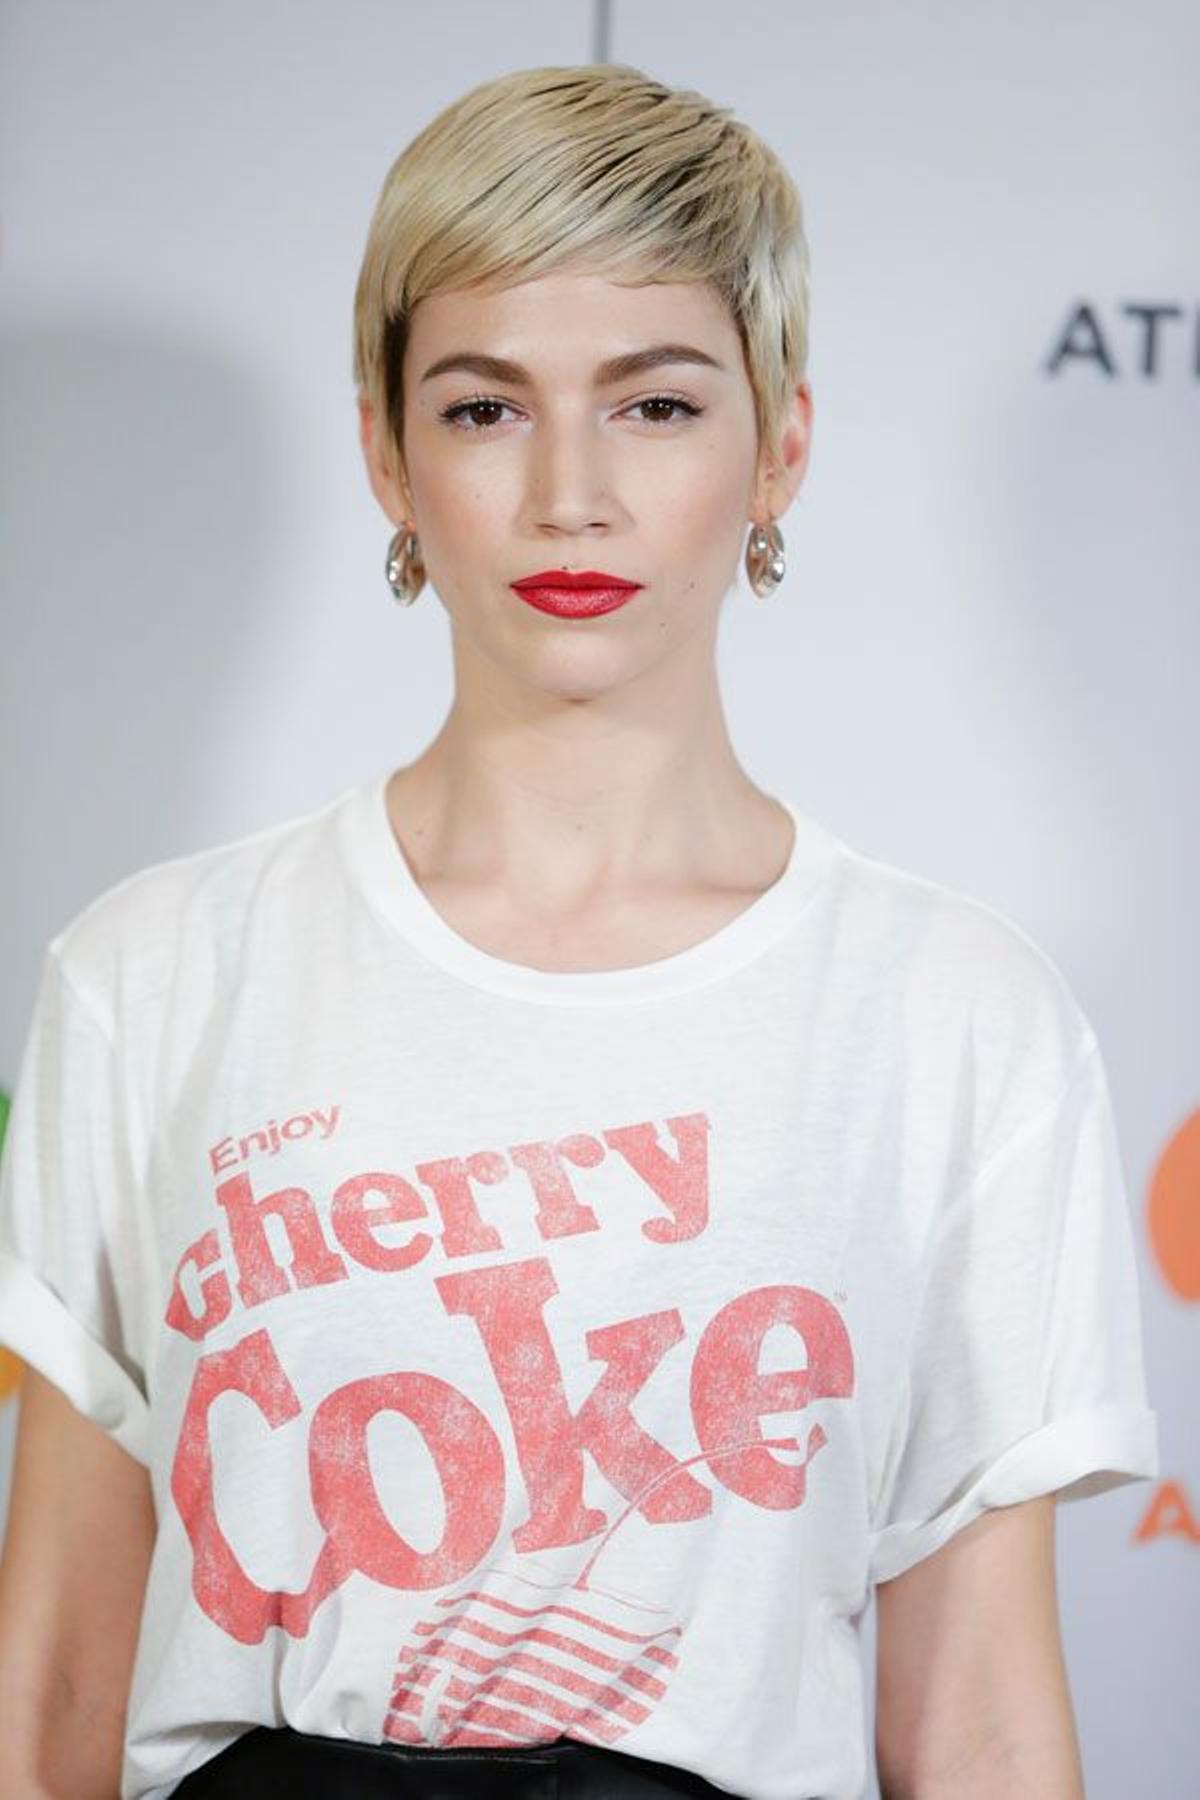 Detalle del look de Úrsula Corberó con camiseta, pantalones de cuero y labios rojos